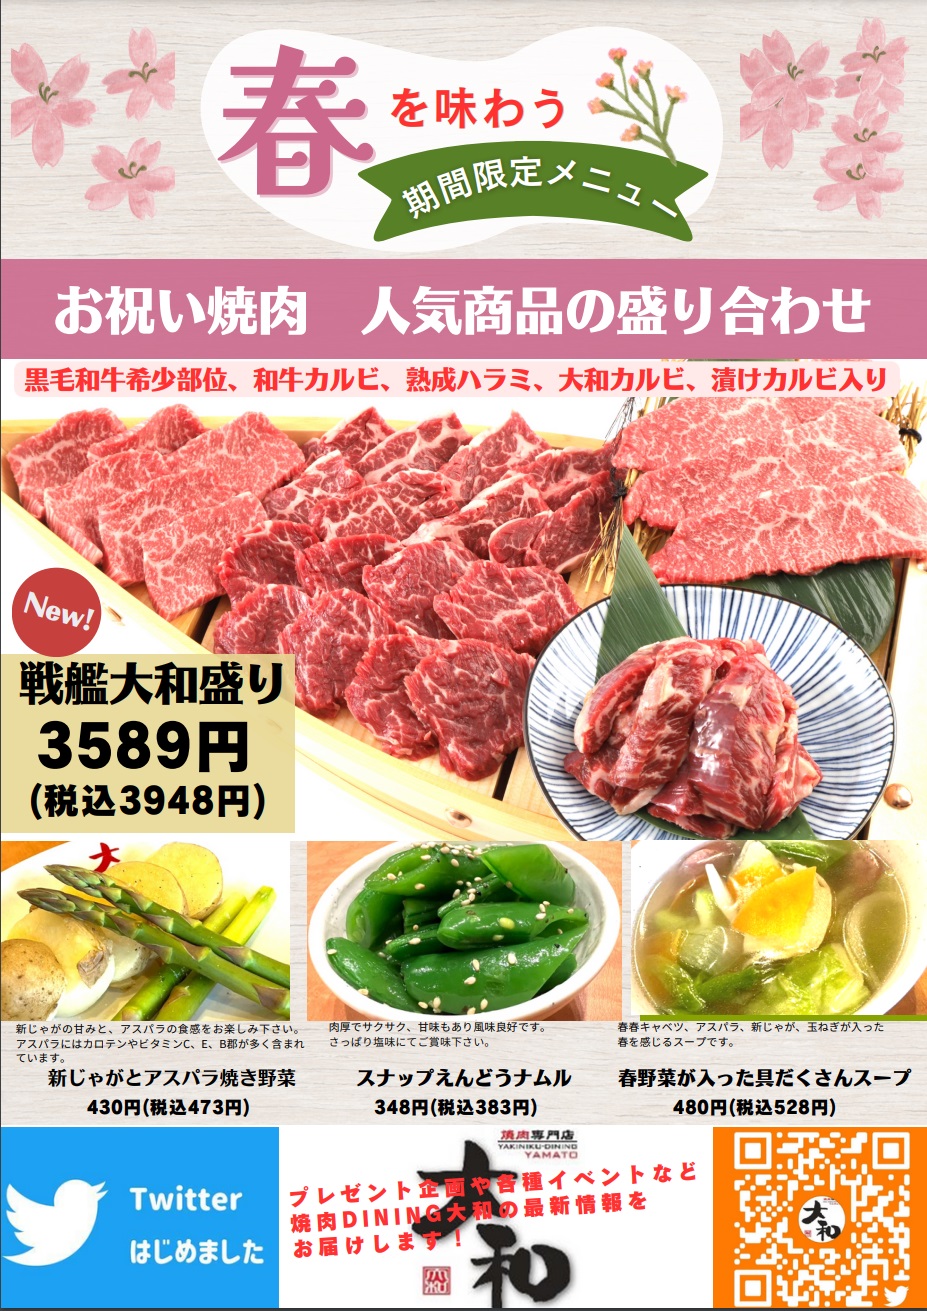 『焼肉DINING大和』では、2023年3月17日(金)より春の期間限定メニューの販売を開始いたします。